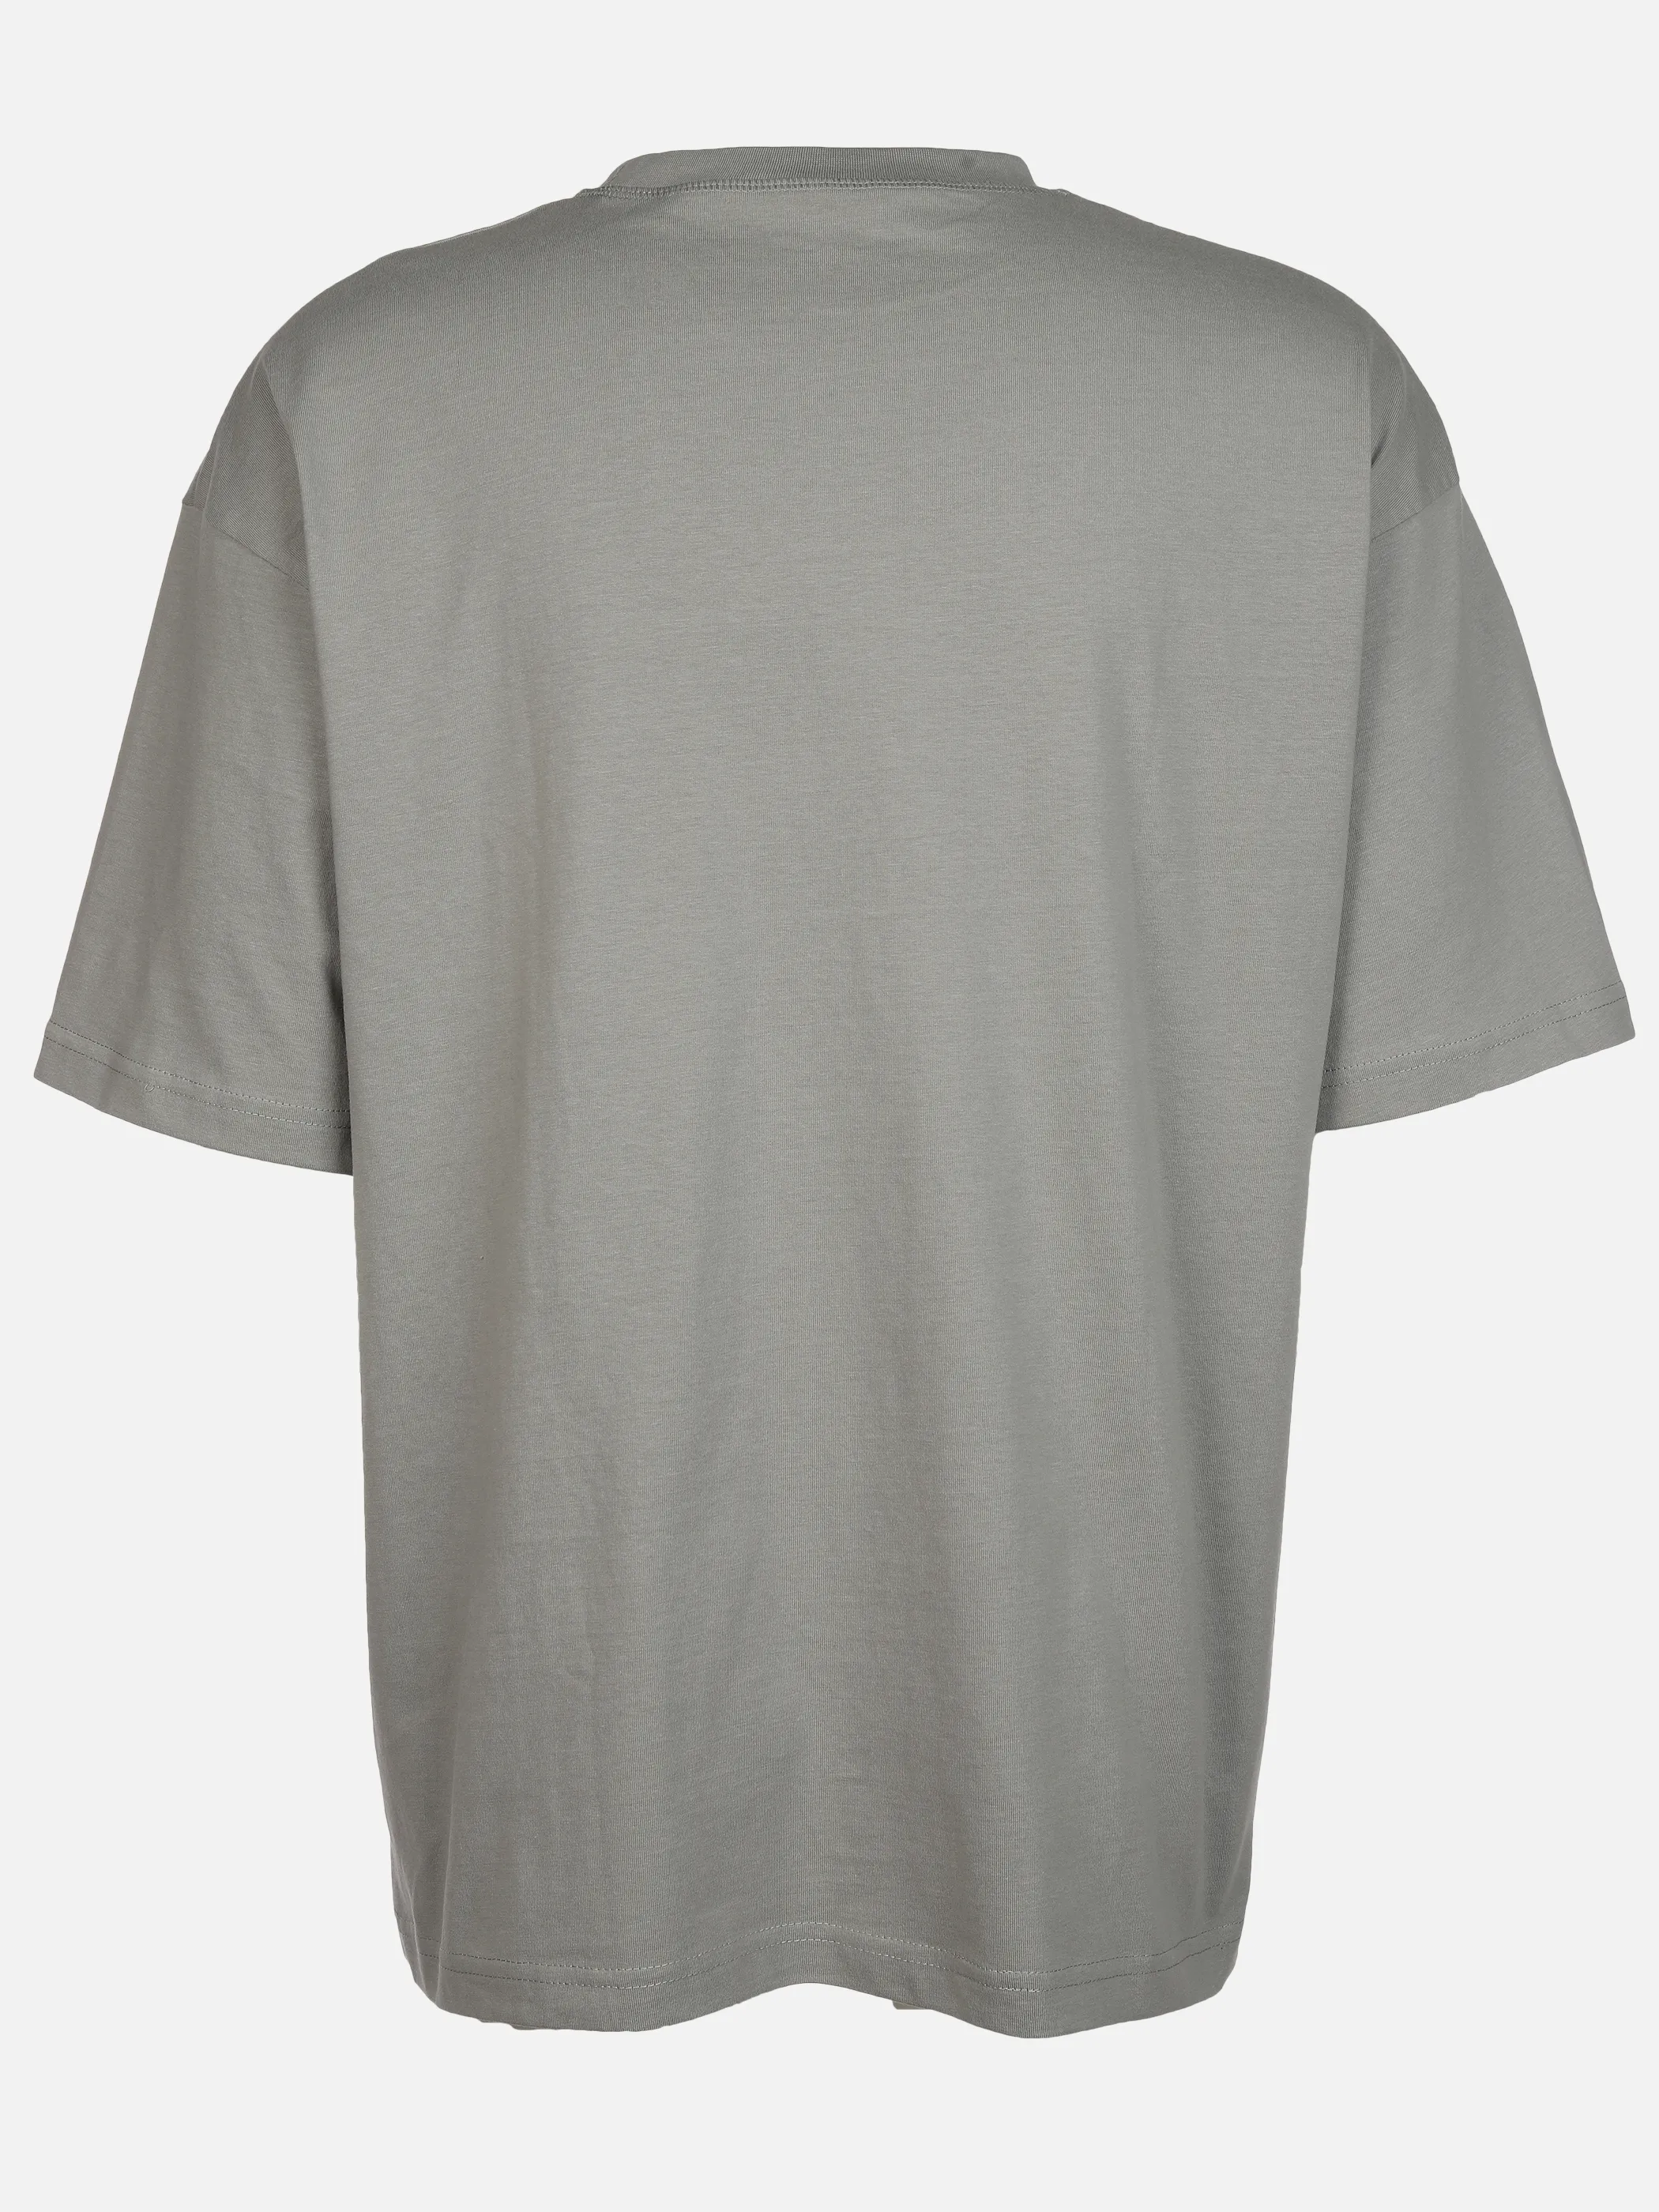 IX-O YF-He- T-Shirt Oversized Grau 891813 SALBEI 2